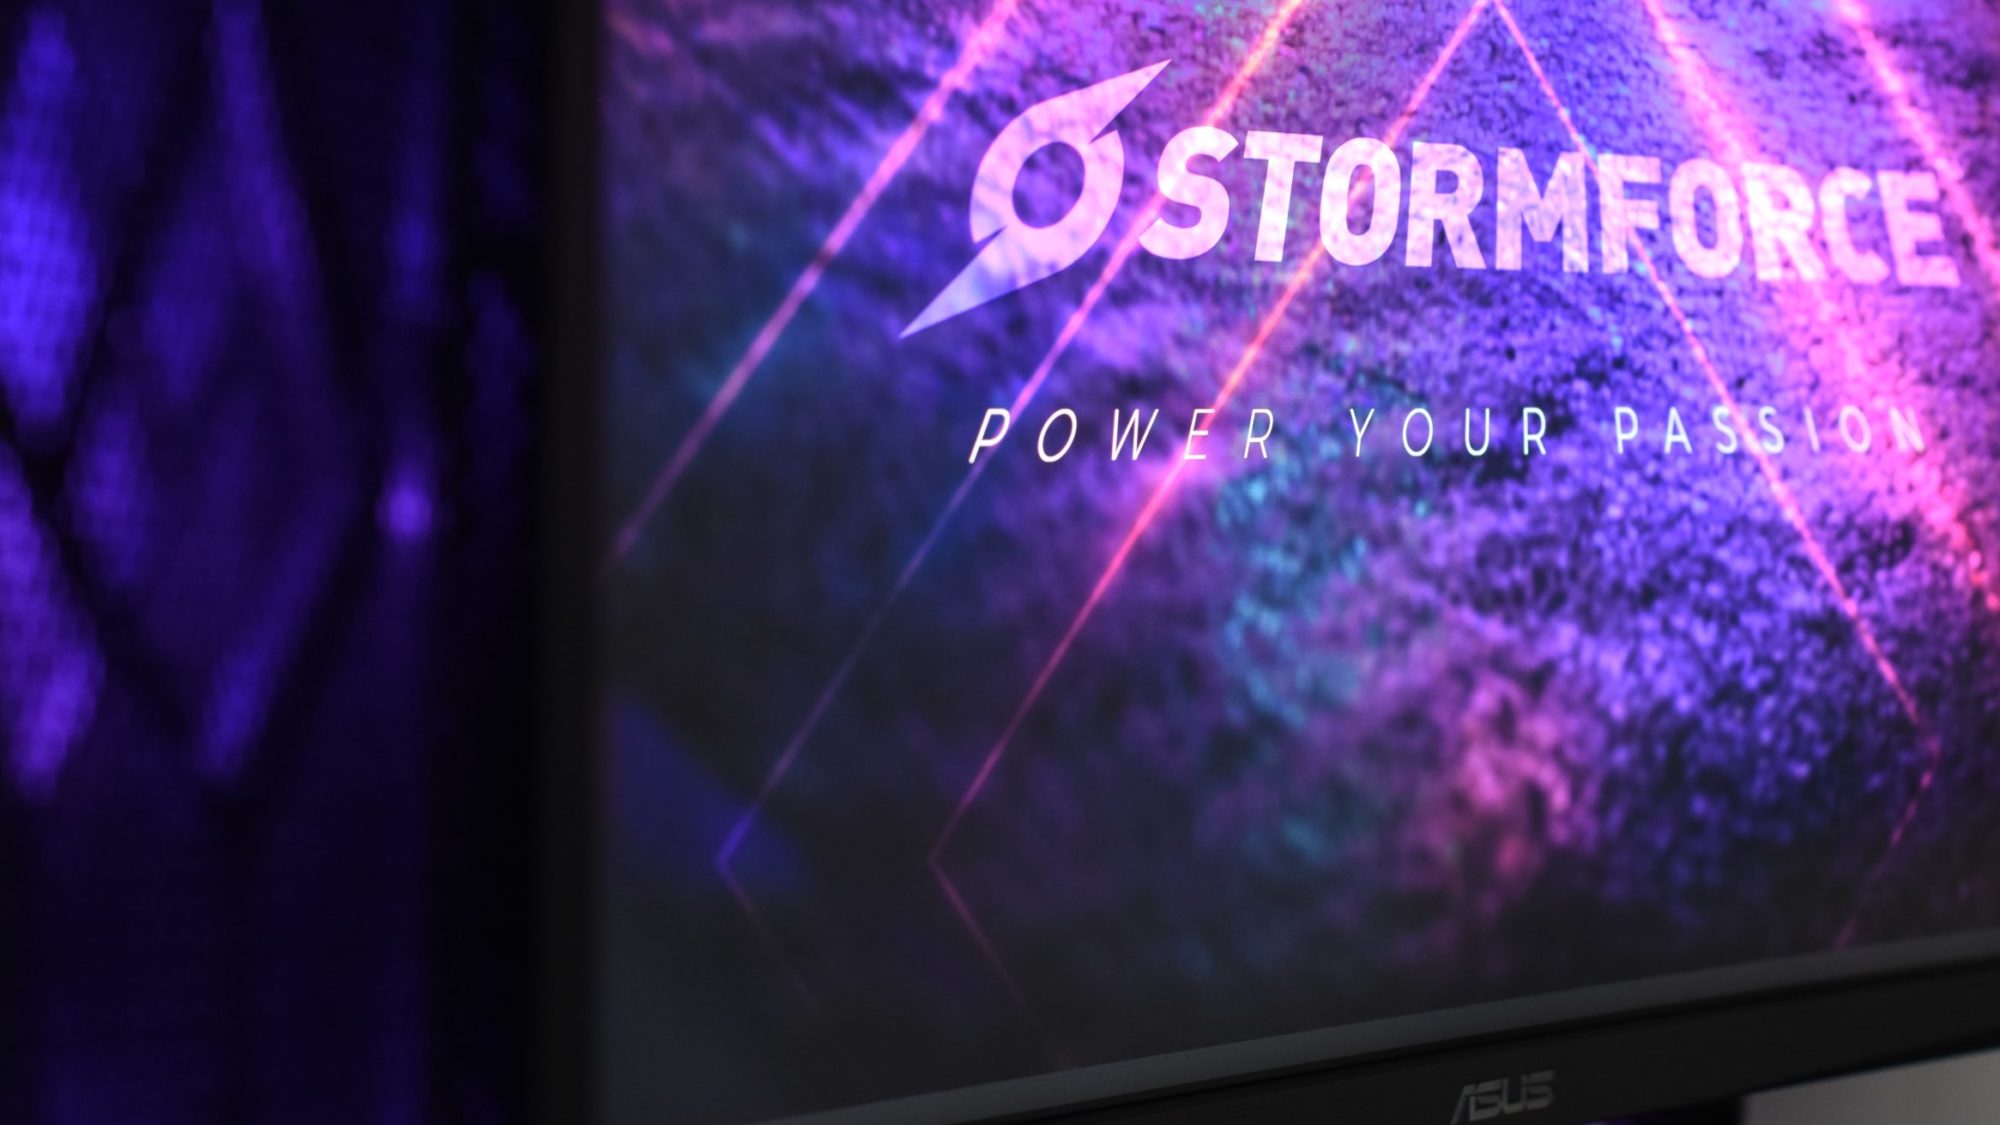 Deko partners with Stormforce Gaming